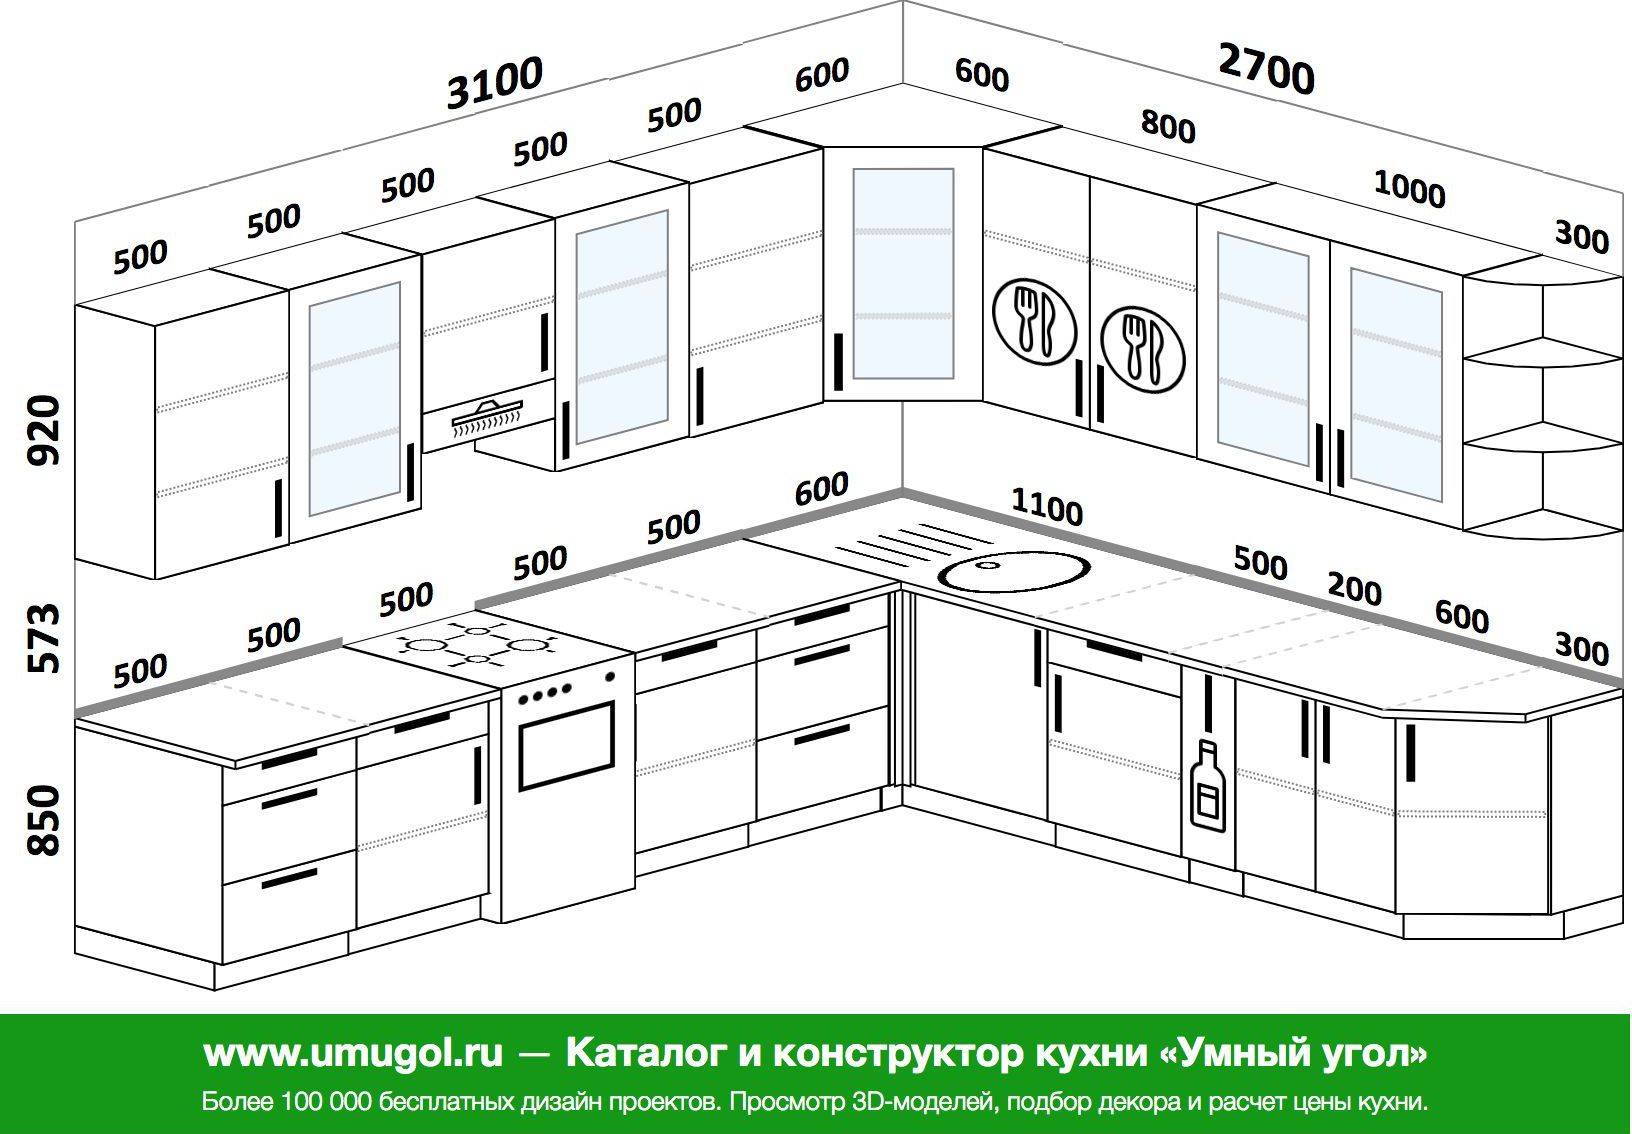 Как узнать необходимые размеры столешницы для кухни | ml.by